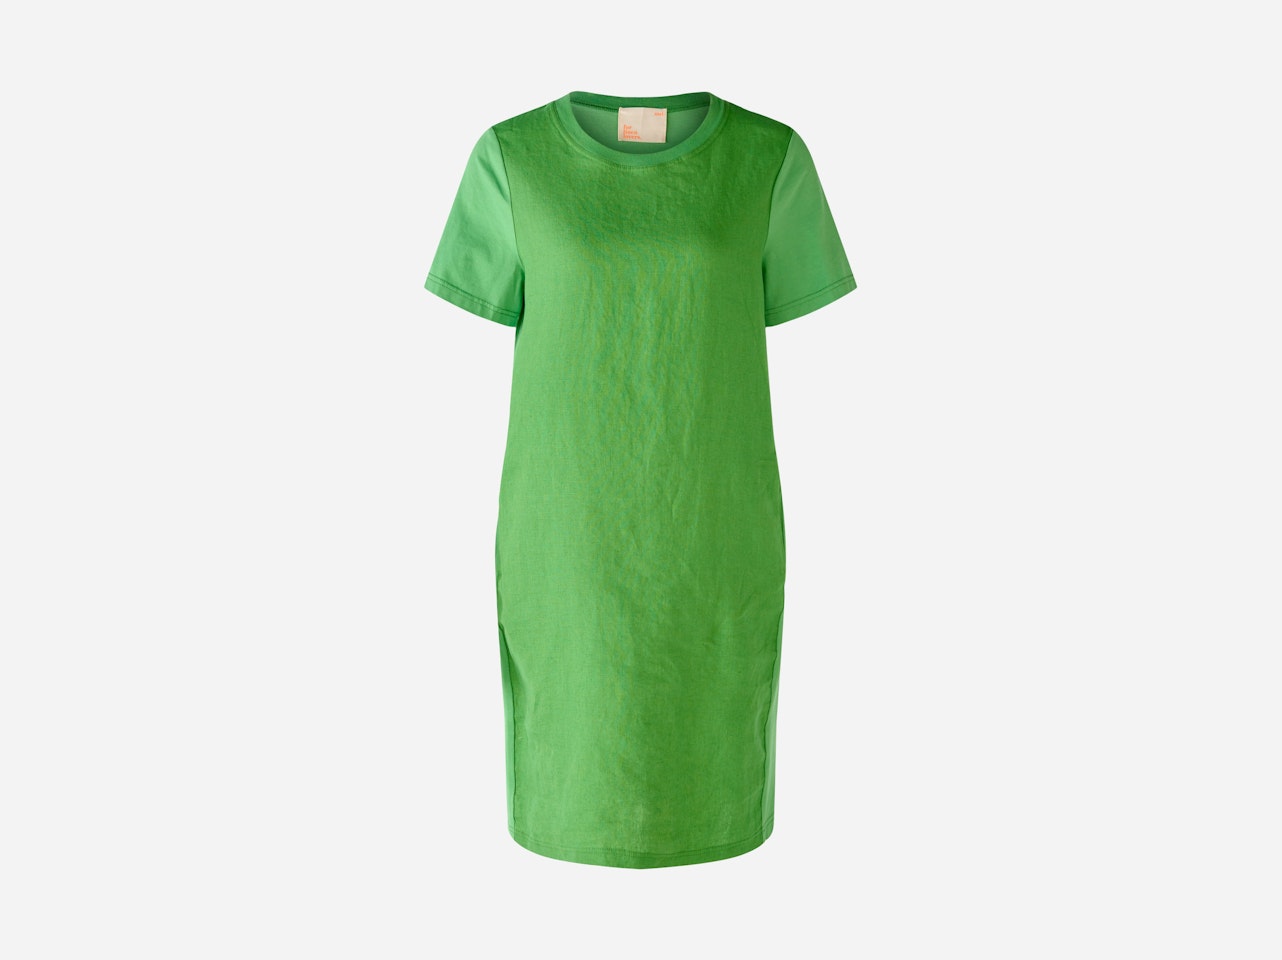 Bild 7 von Kleid Leinen-Baumwollpatch in green leaf | Oui